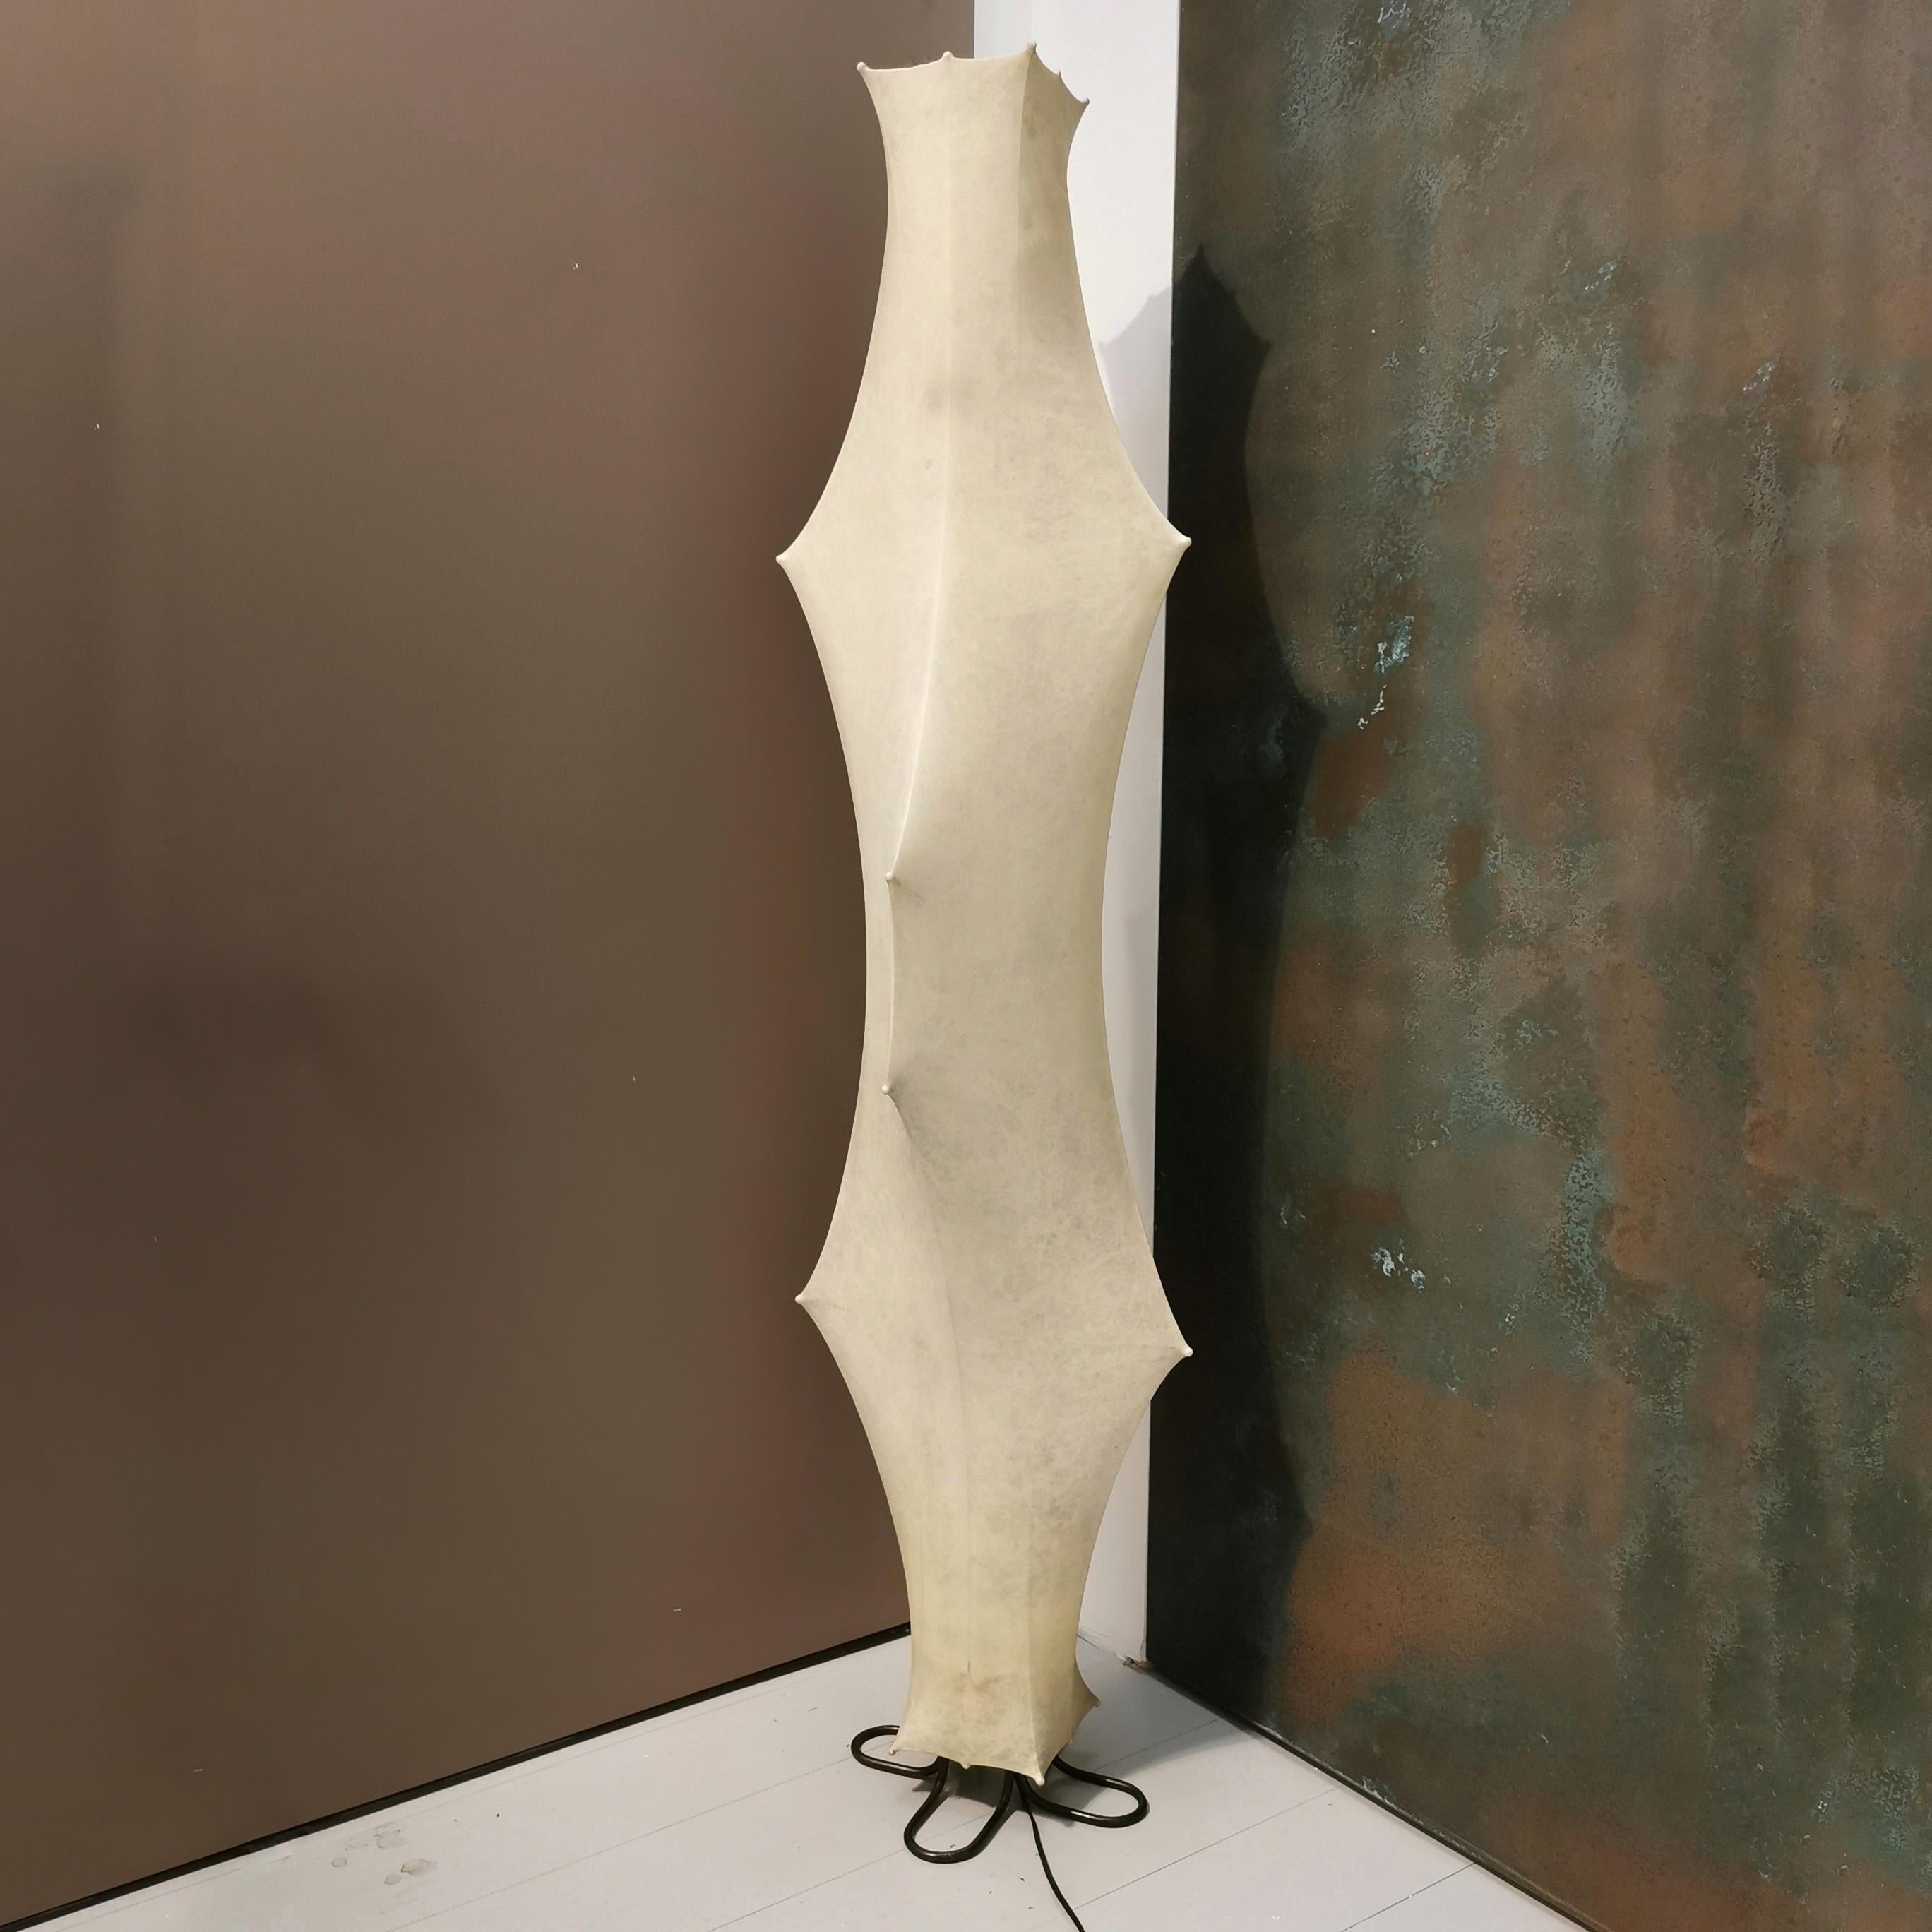 Lampadaire Flos Fantasma de Tobia Scarpa, Italie, années 1960
Créé par le maître designer Tobia Scarpa, ce lampadaire est le fruit d'un travail de longue haleine  ressemble à une œuvre d'art fonctionnelle. Sa silhouette frappante brille d'une